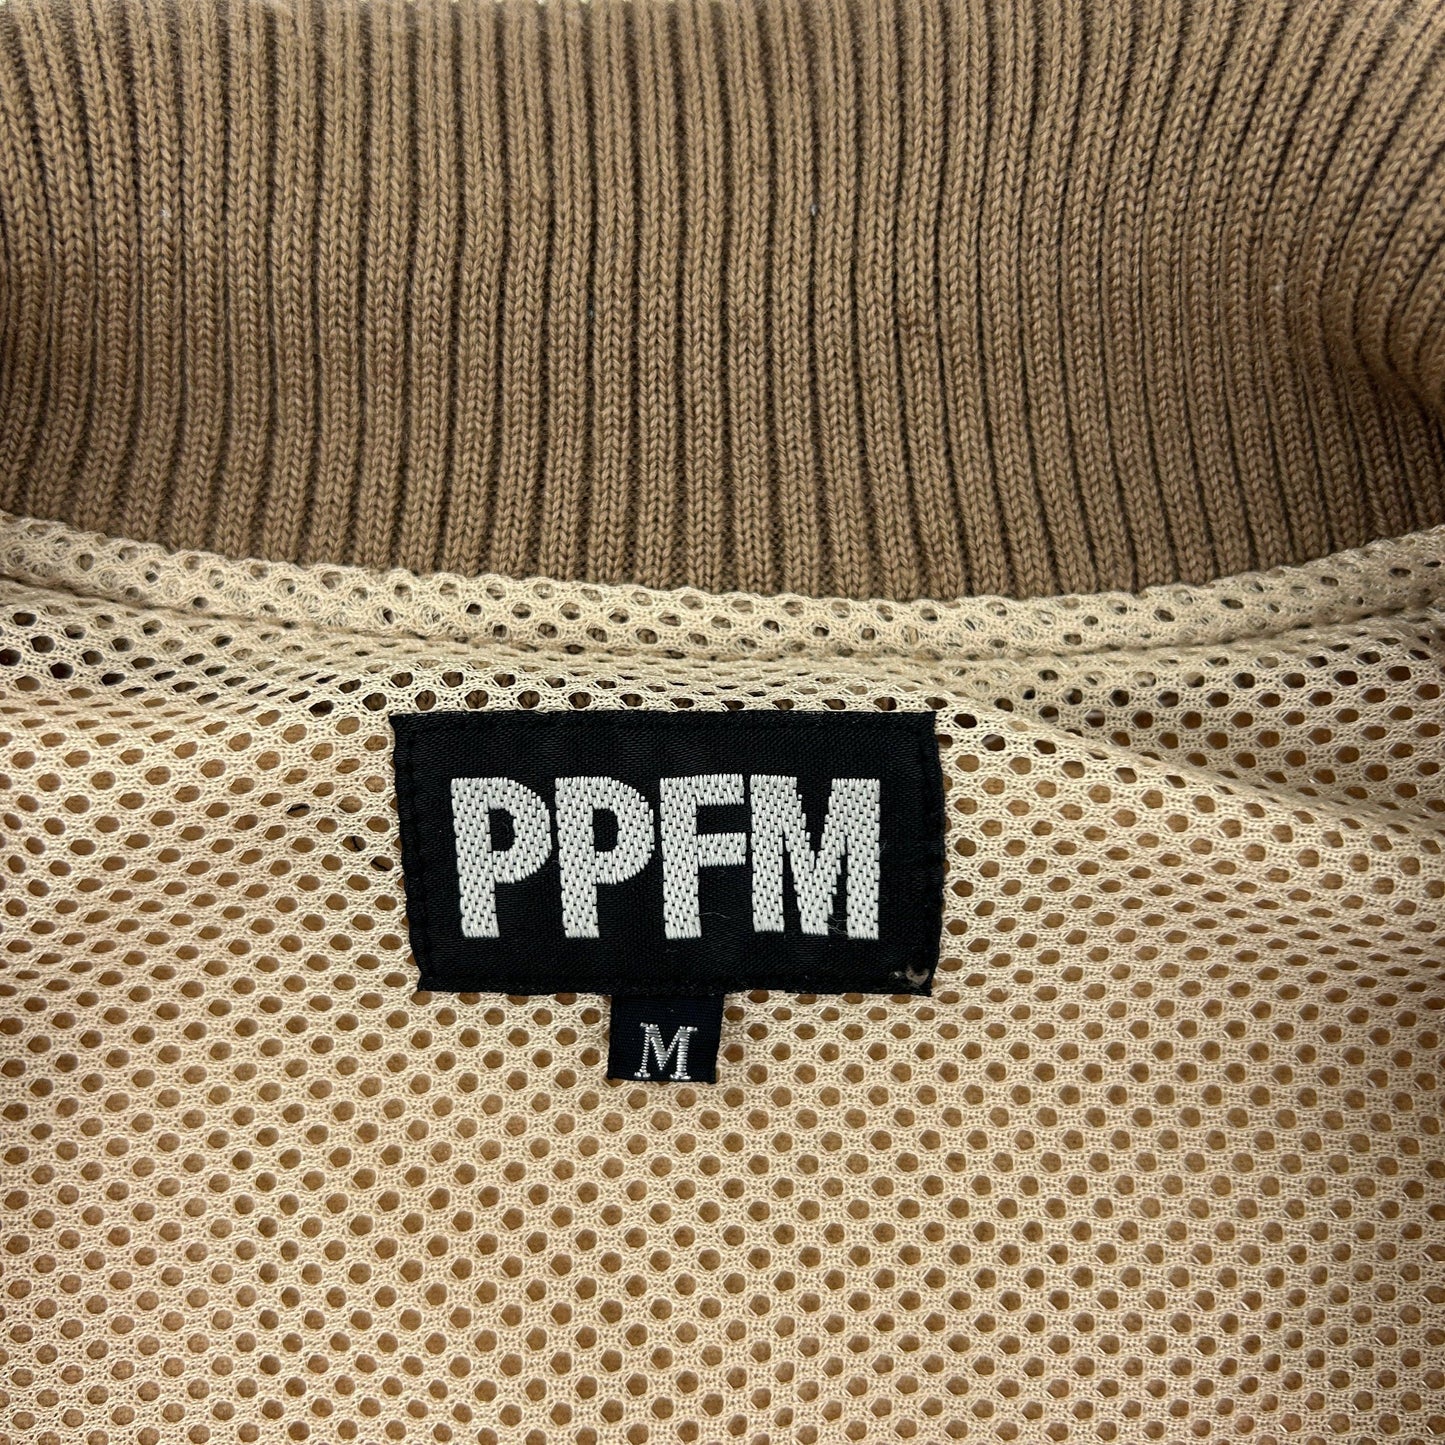 Vintage PPFM Zip Up Jacket Size M - Known Source